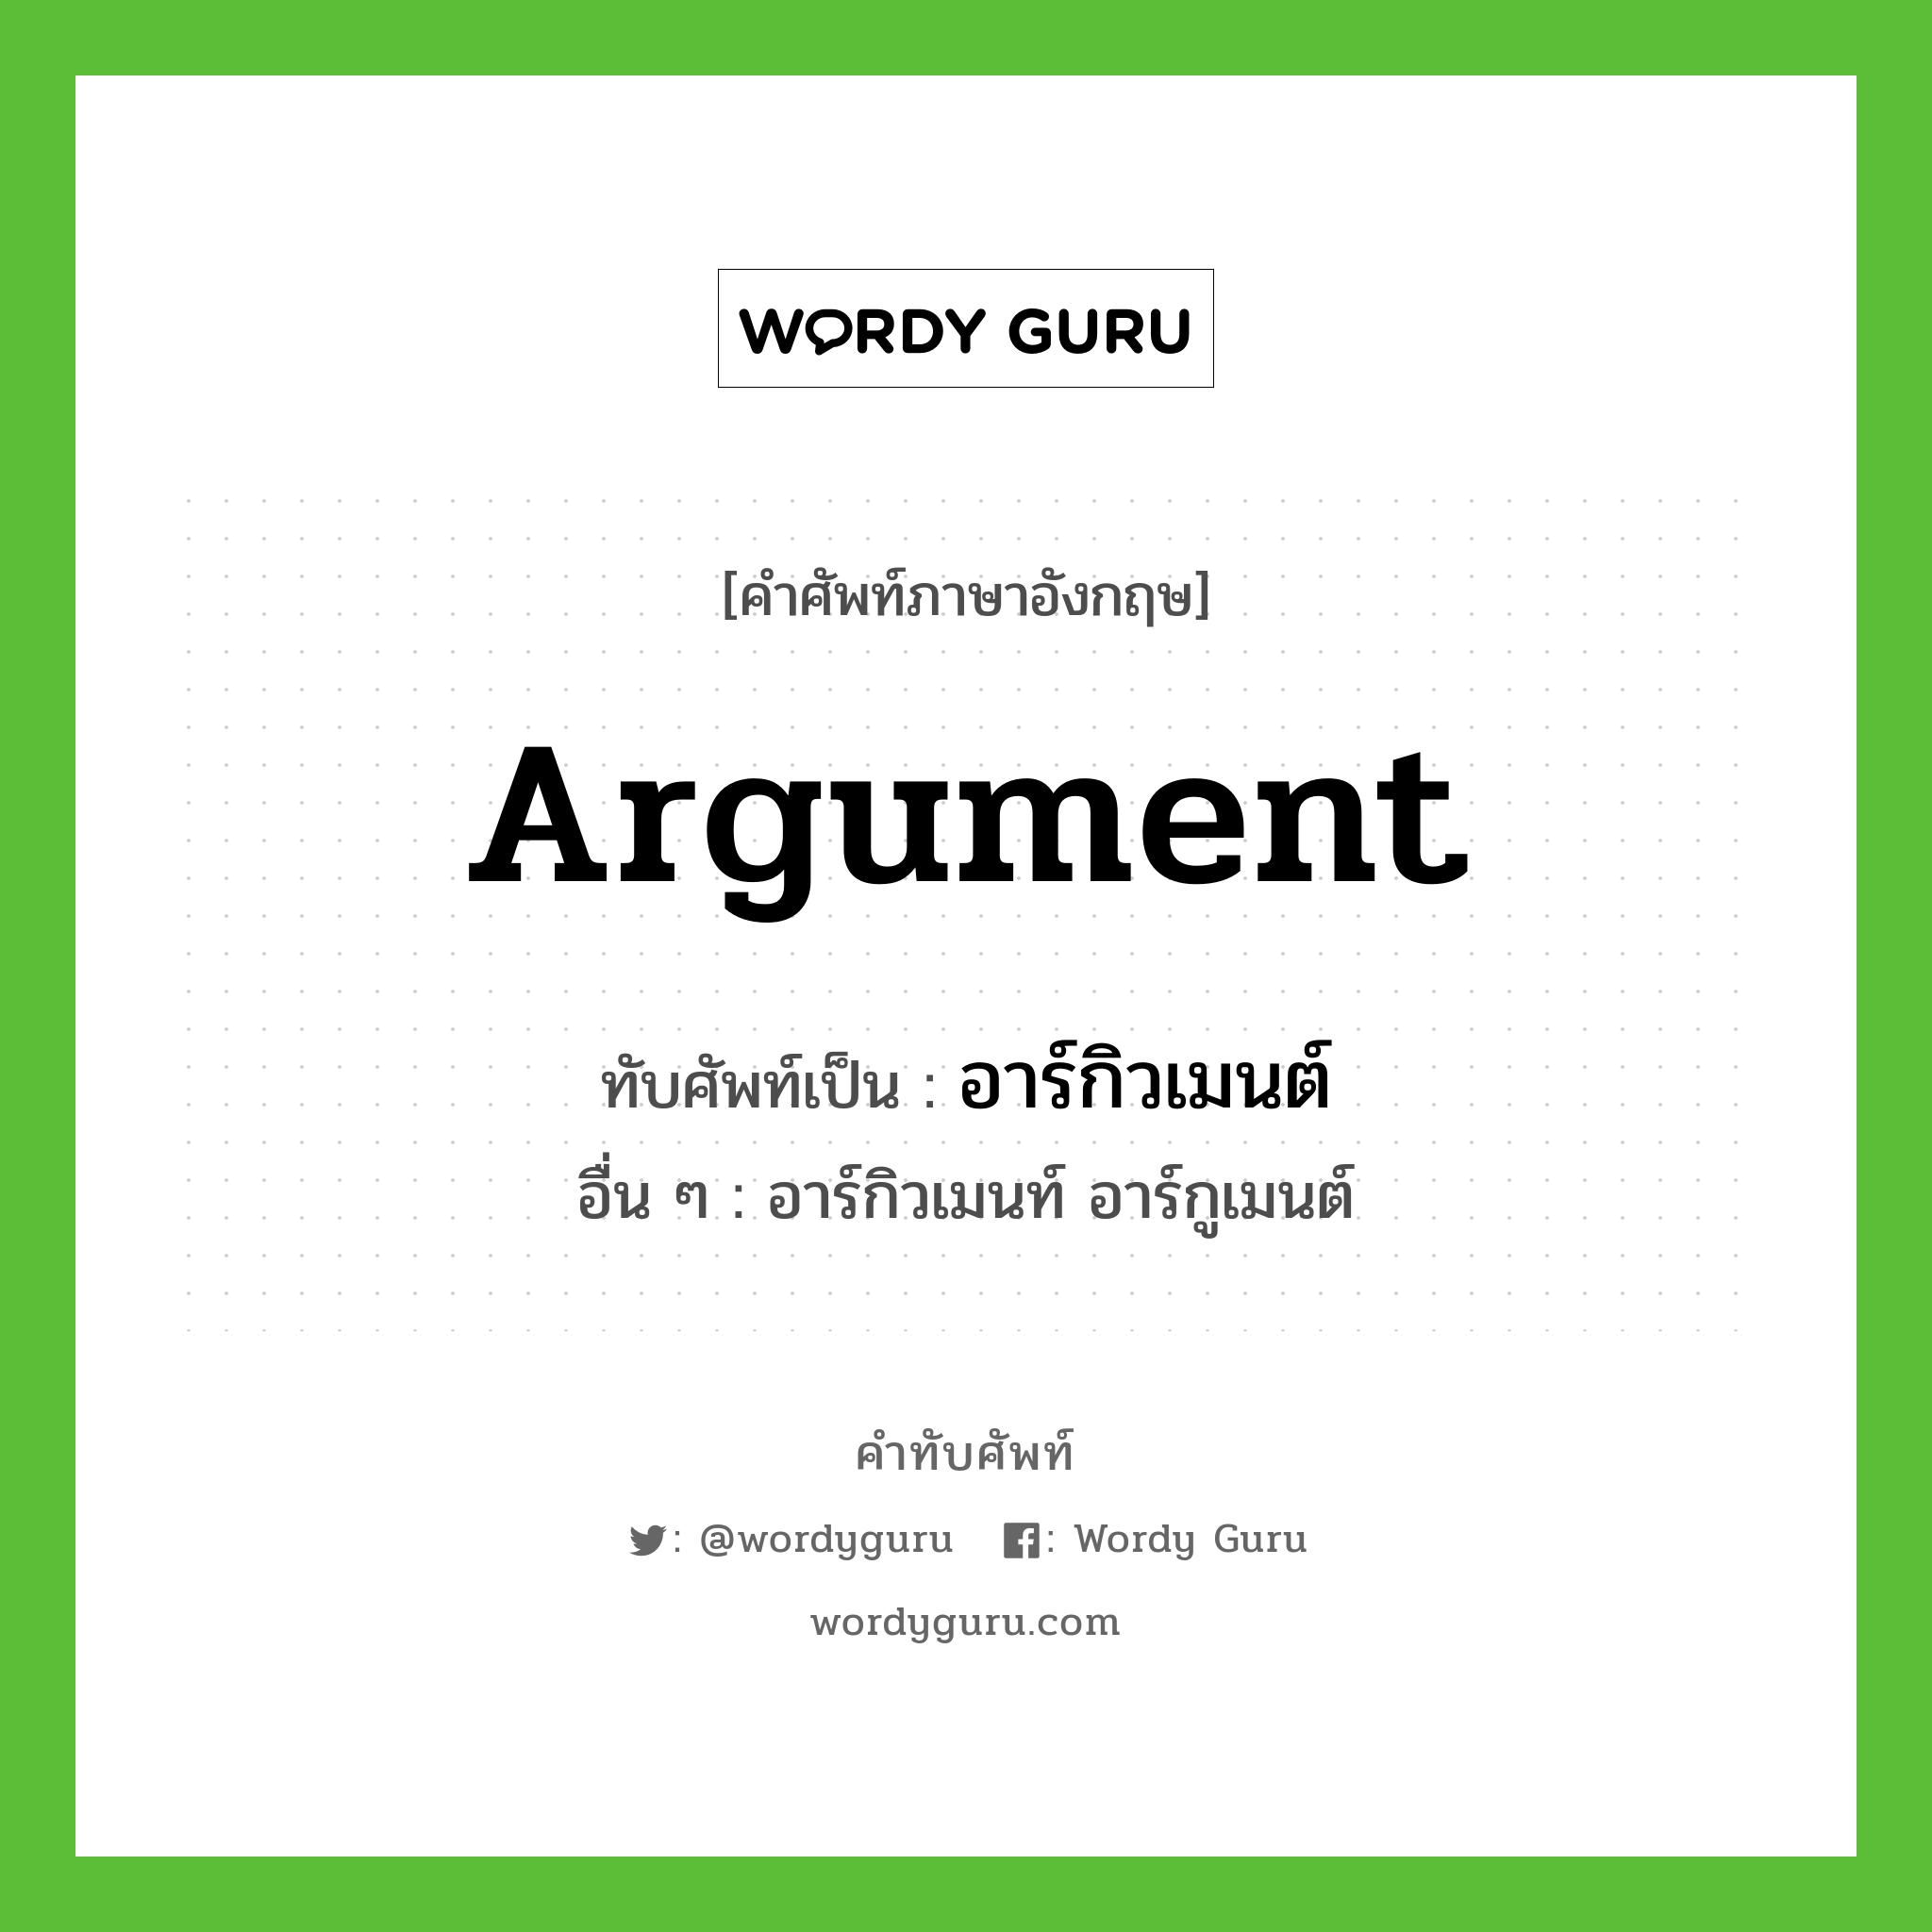 argument เขียนเป็นคำไทยว่าอะไร?, คำศัพท์ภาษาอังกฤษ argument ทับศัพท์เป็น อาร์กิวเมนต์ อื่น ๆ อาร์กิวเมนท์ อาร์กูเมนต์